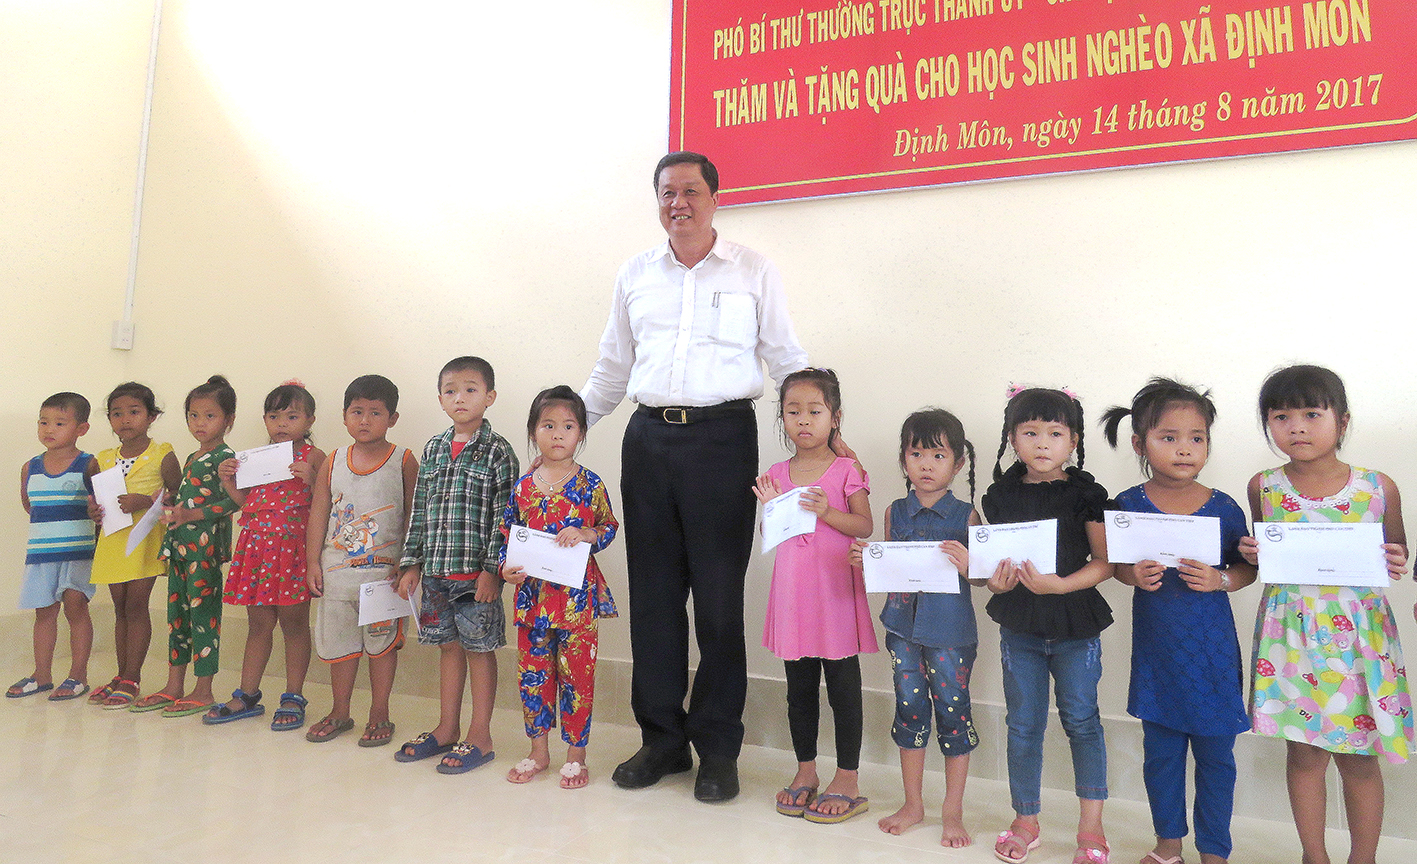 Đồng chí Phạm Văn Hiểu, Phó Bí thư Thường trực Thành ủy Cần Thơ, trao học bổng cho học sinh nghèo xã Định Môn.